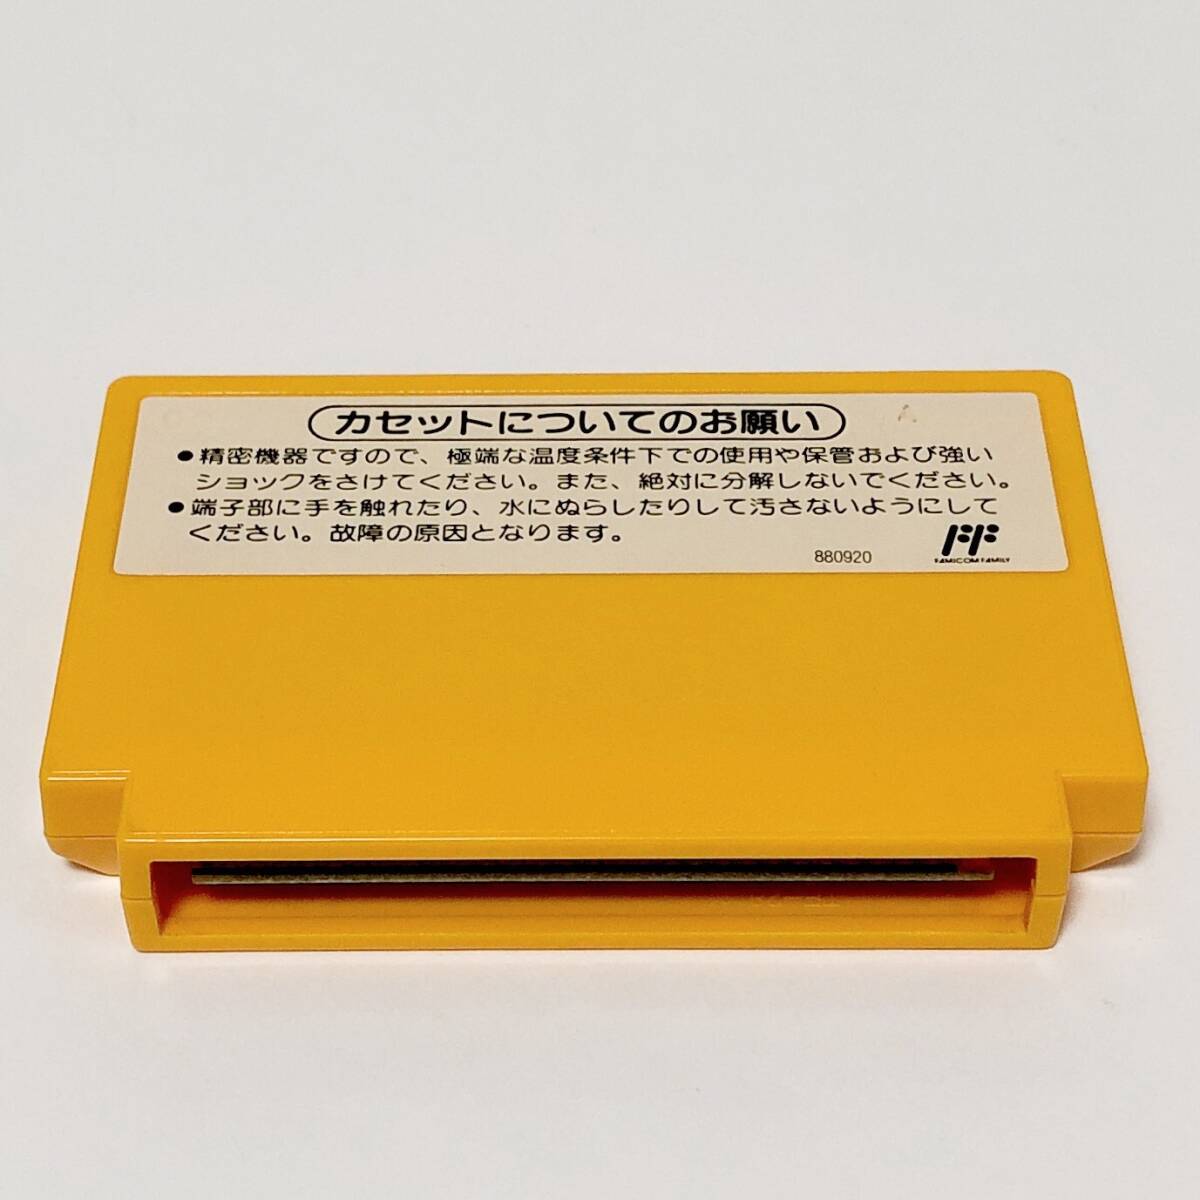 ファミコン スーパーマリオブラザーズ3 箱説付き 痛みあり 任天堂 レトロゲーム Nintendo Famicom Super Mario Bros. 3 CIB Testedの画像8